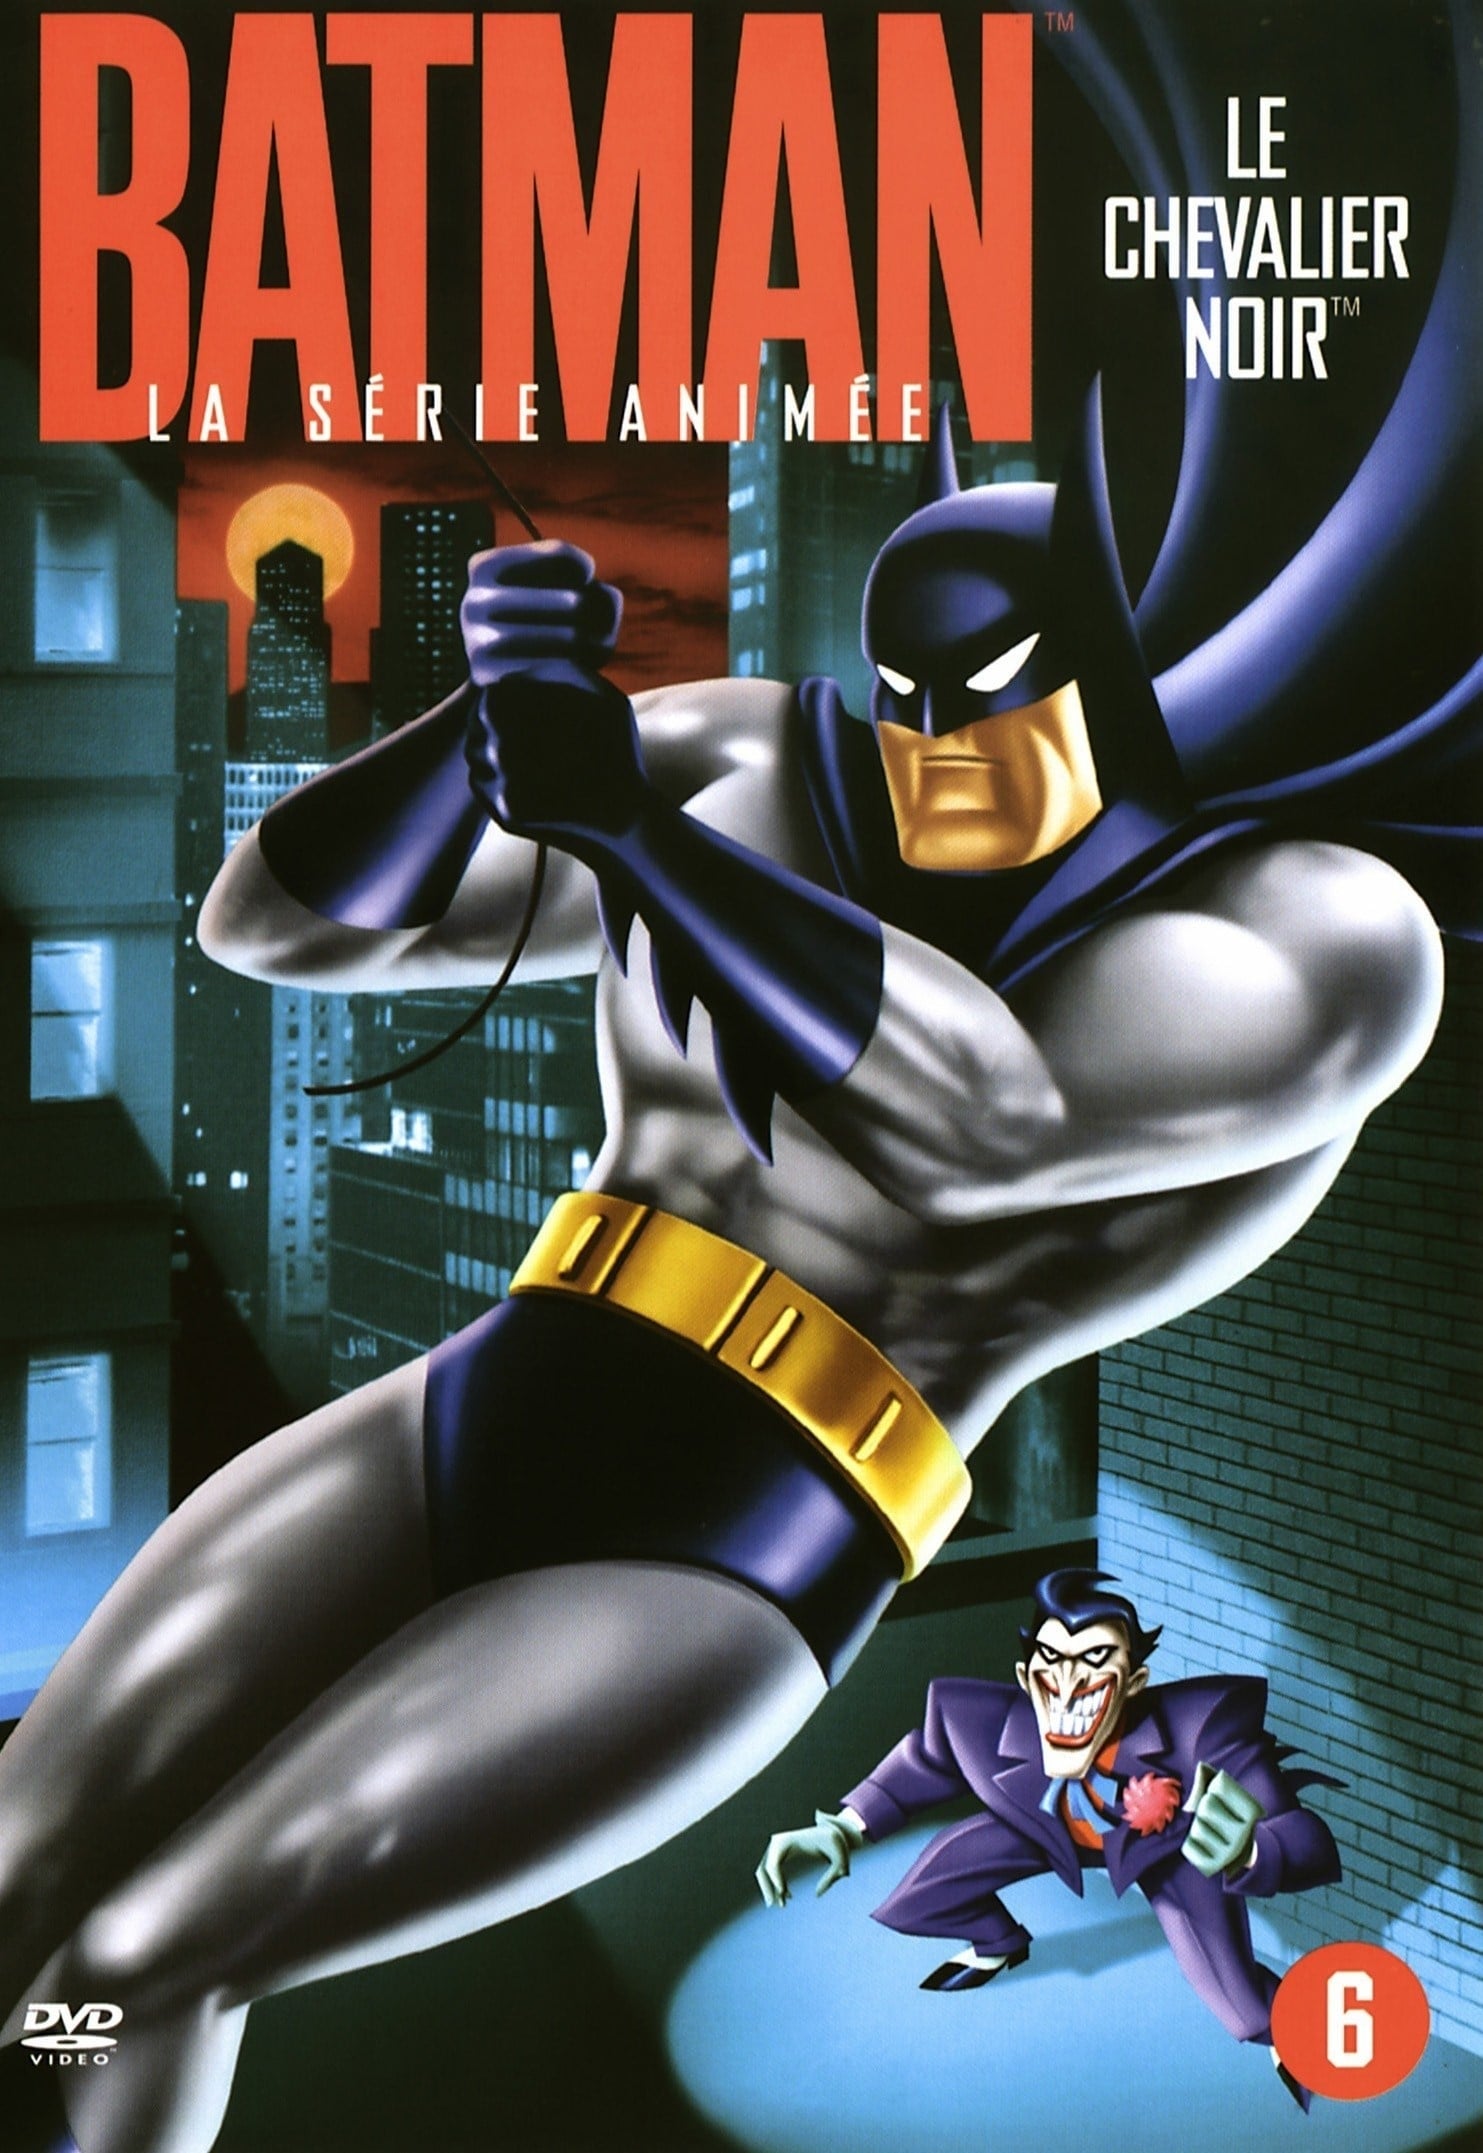 Batman : La Série animée (1992, Série, 4 Saisons) — CinéSérie